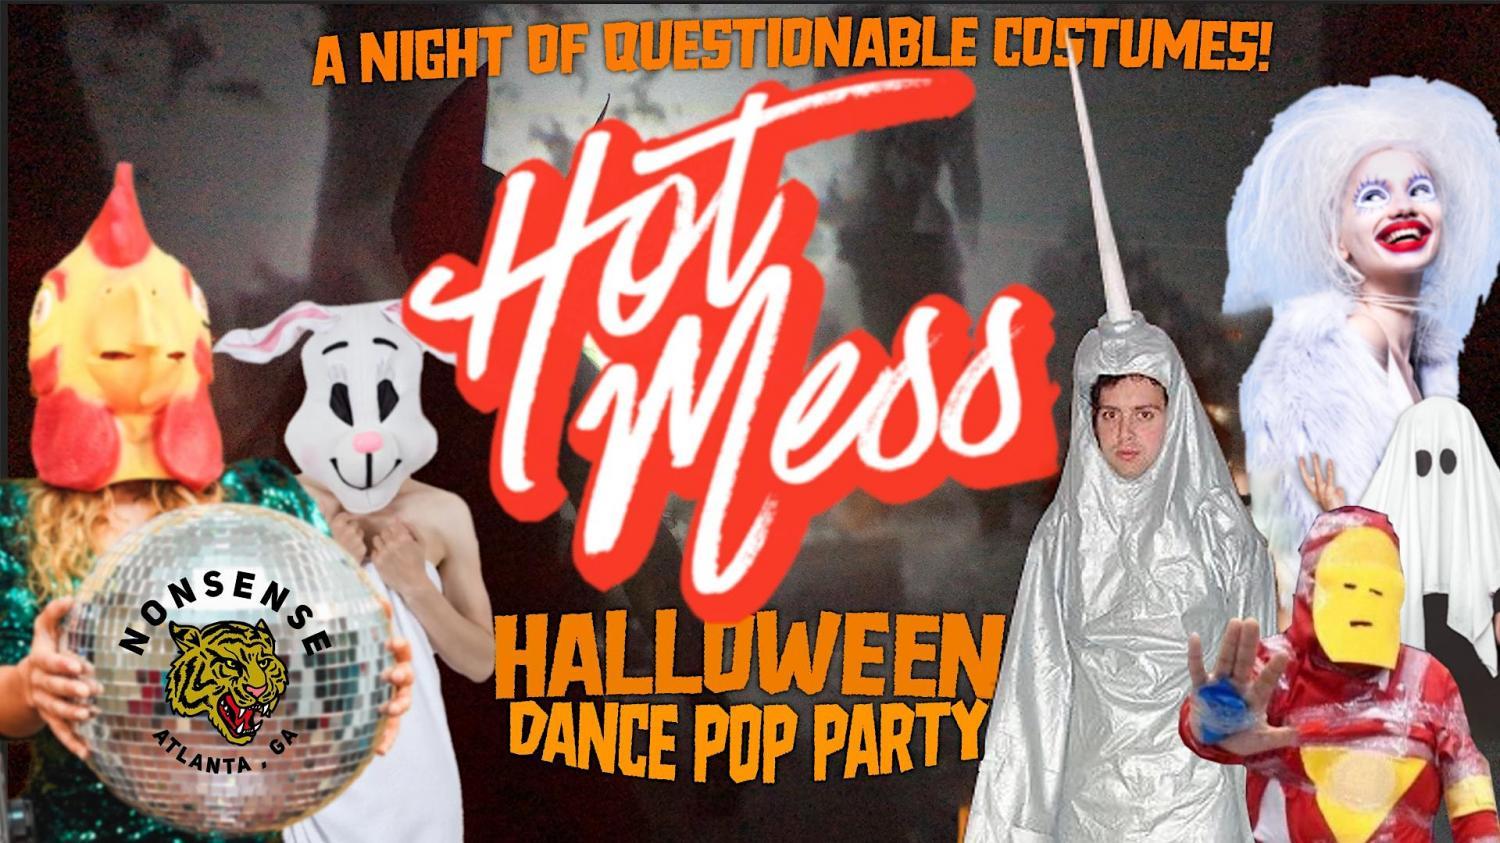 Hot Mess Halloween Dance Pop Party
Fri Oct 21, 10:00 PM - Sat Oct 22, 3:00 AM
in 4 days